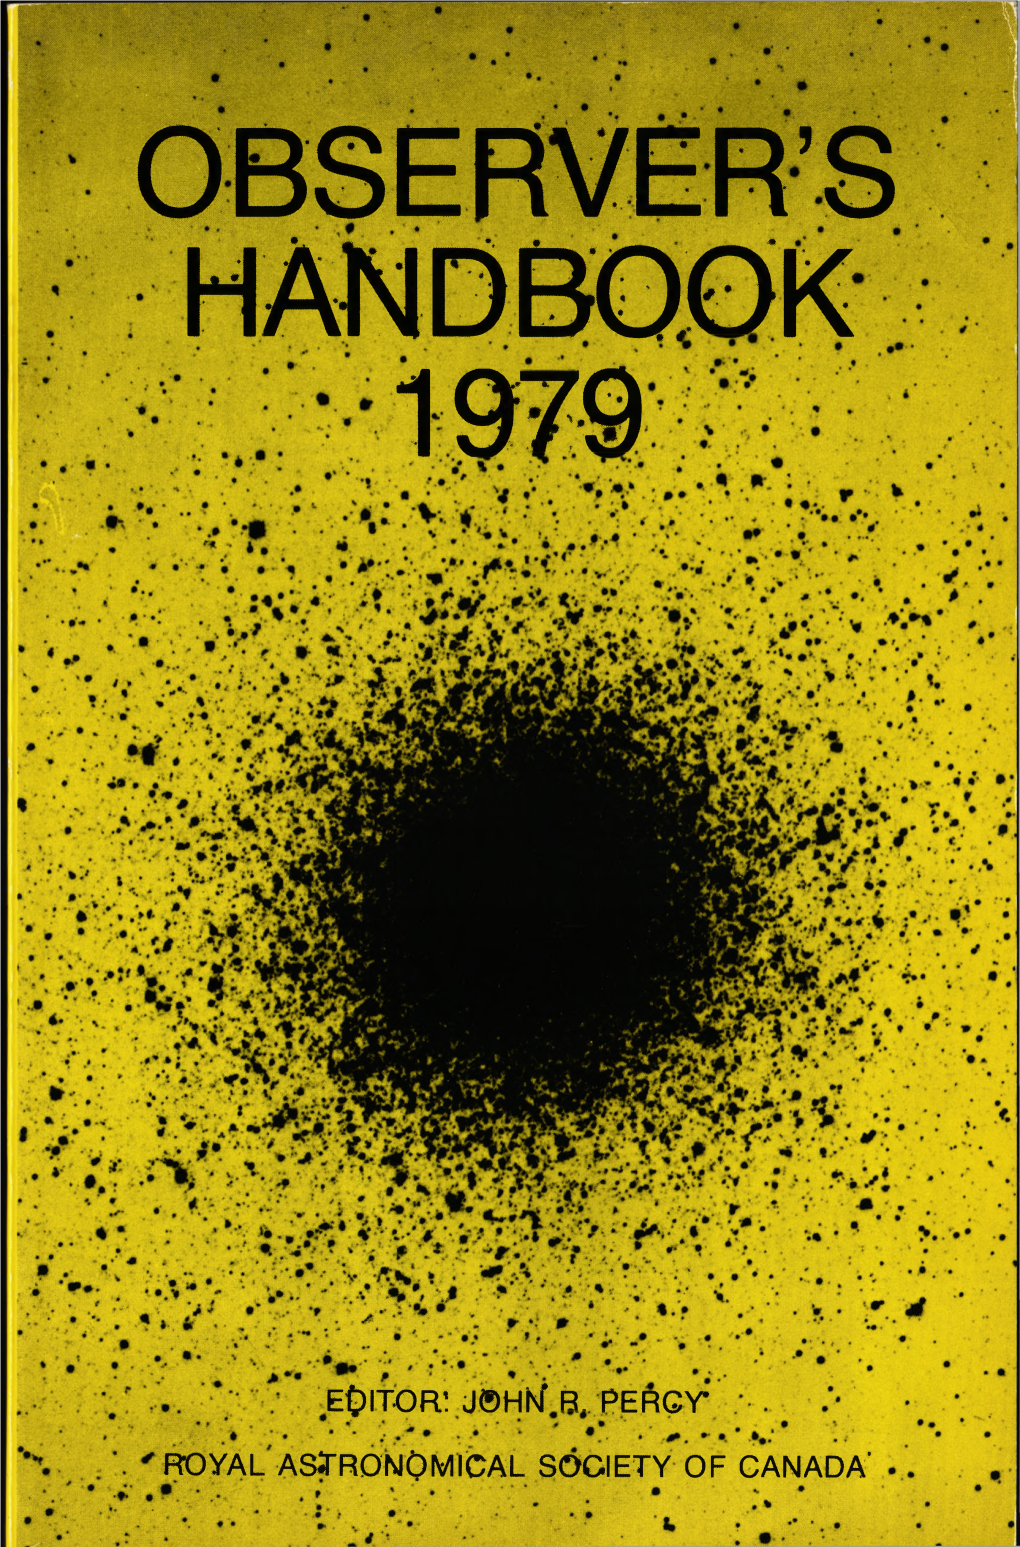 Observer's Handbook 1979